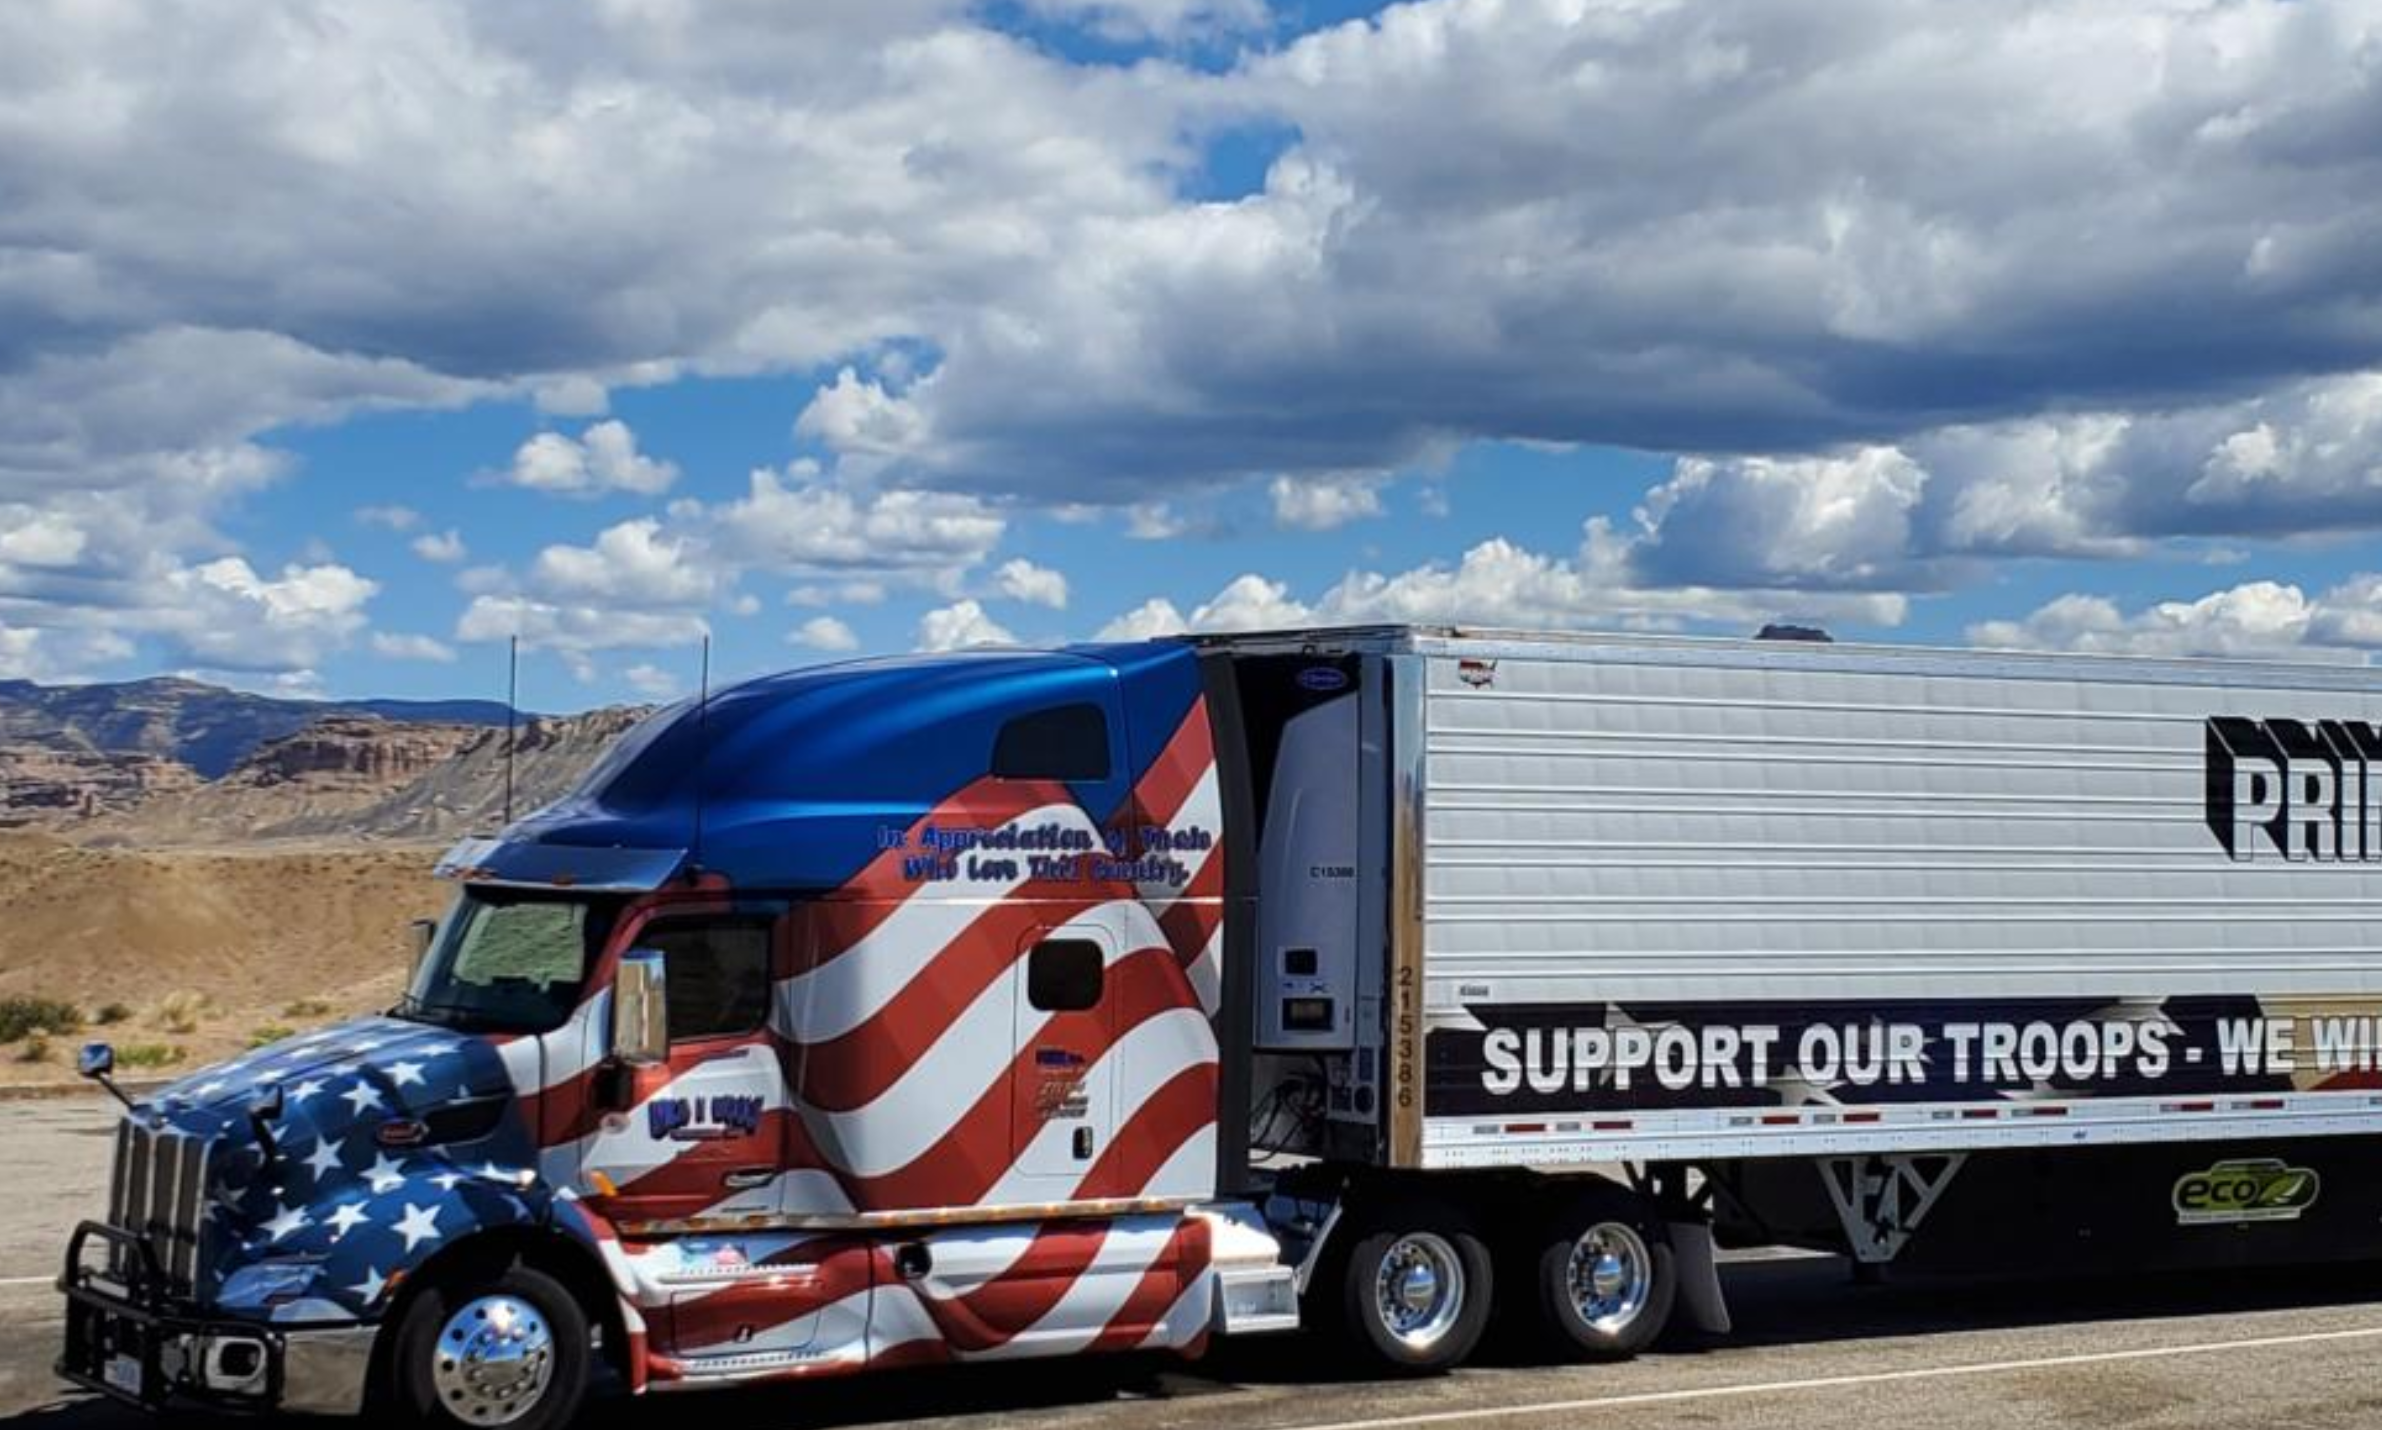 ViT: Patriotic semi truck photos wanted